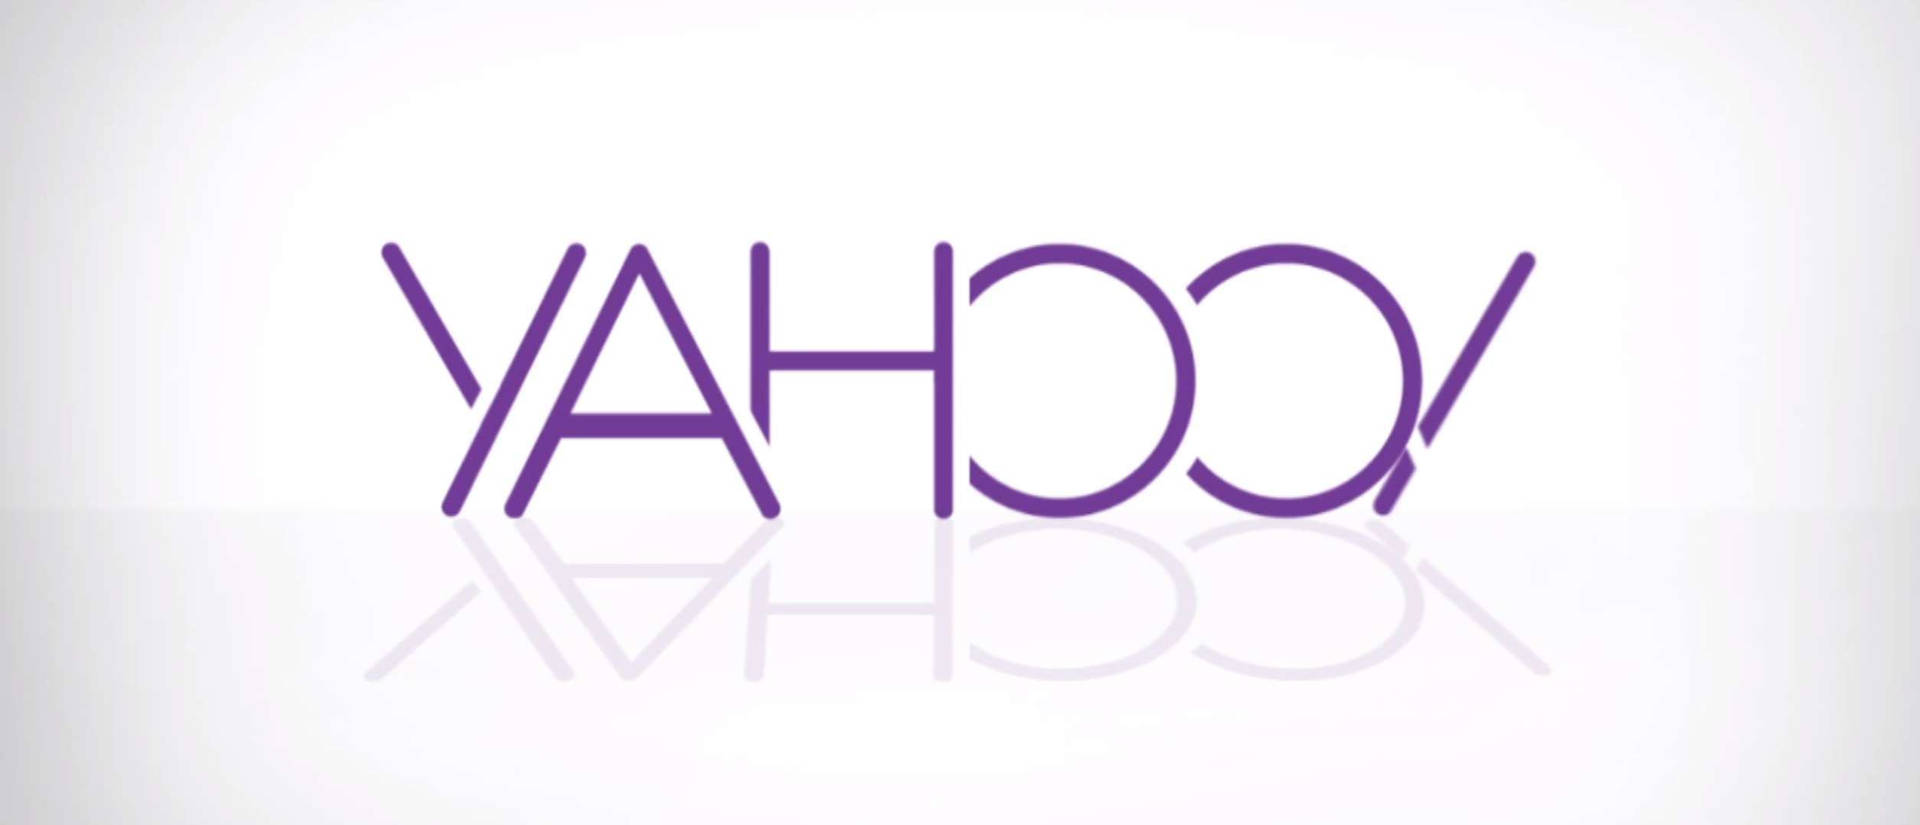 Yahoo Minimalist Reflection Background